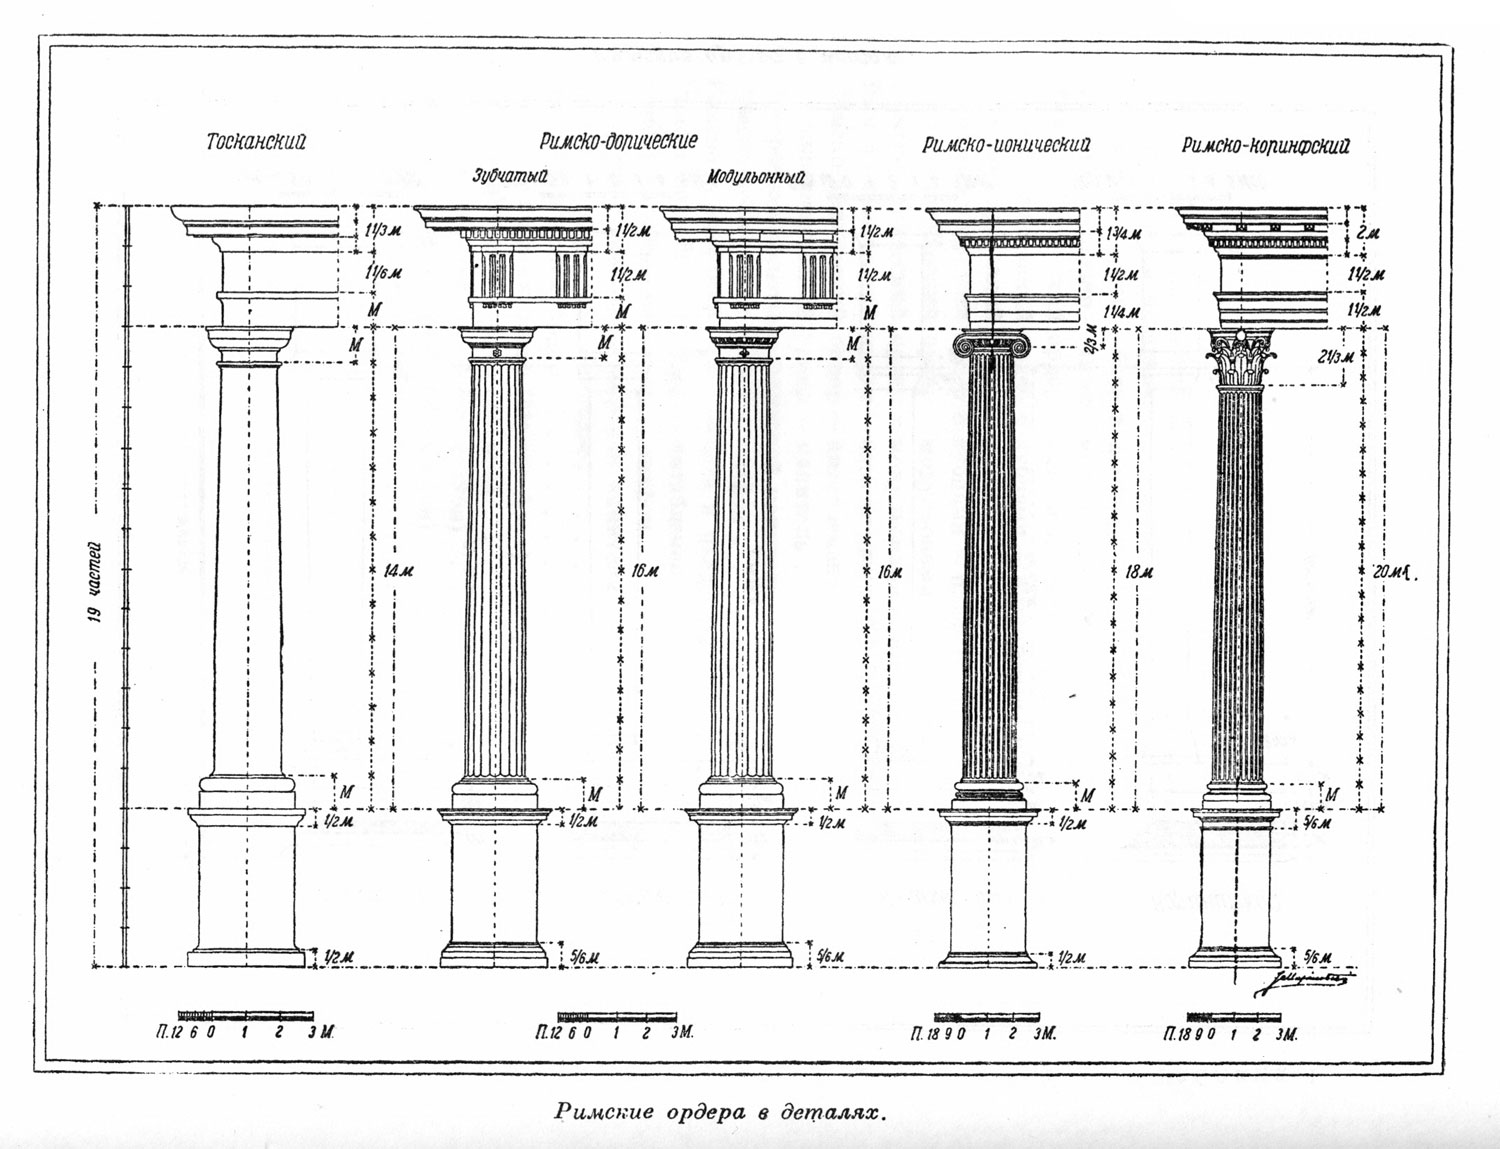 Римские ордера в деталях